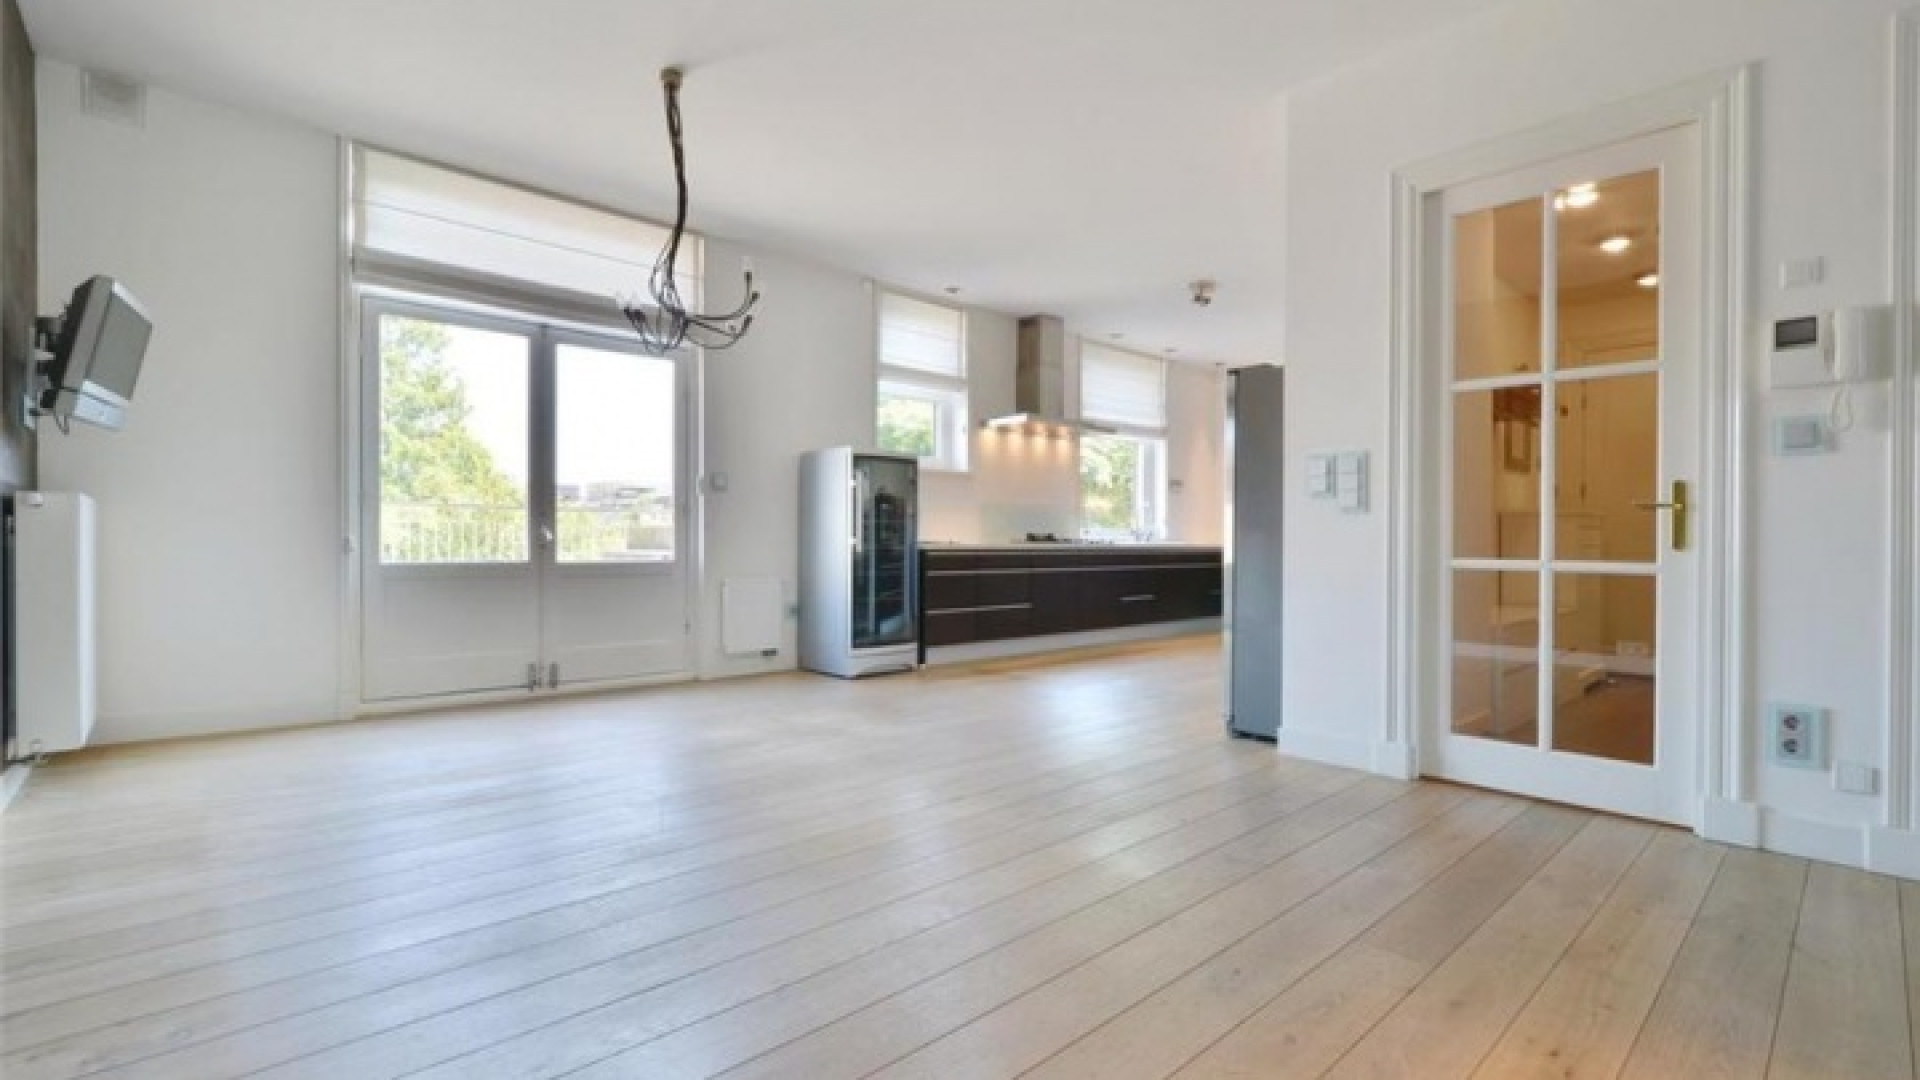 Frank Rijkaard vindt huurder voor dit zeer luxe appartement met jacuzzi op dakterras. Zie foto's 8